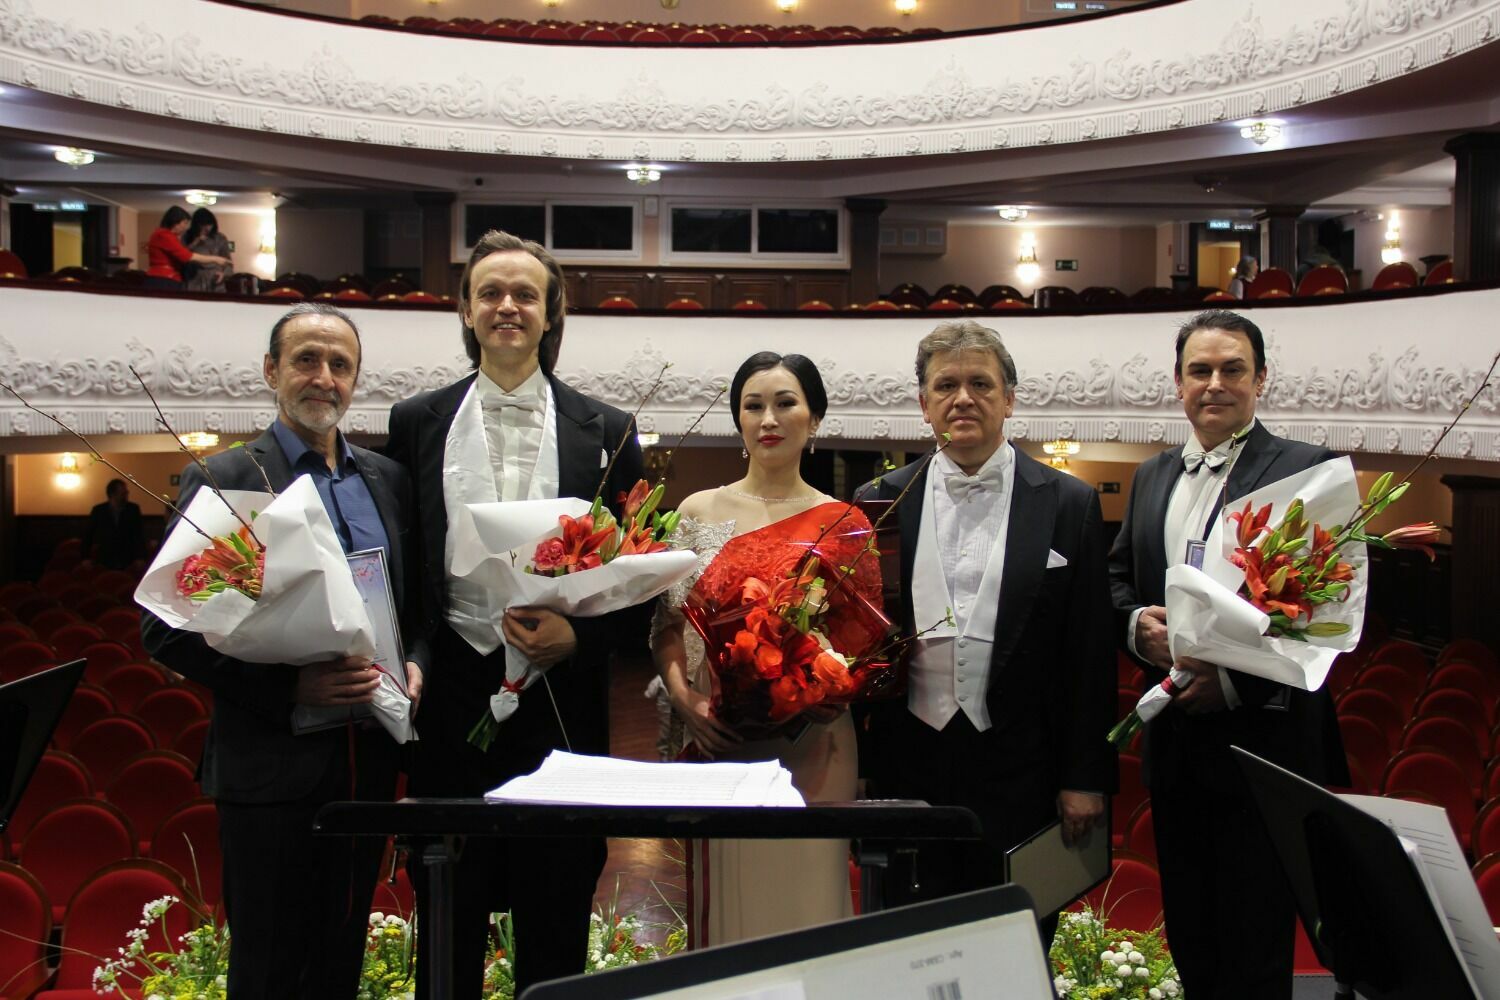 Слева направо: Адисон Салахутдинов, Дмитрий Банаев, Венера Протасова, Алексей Михайлов, Дмитрий Неласов